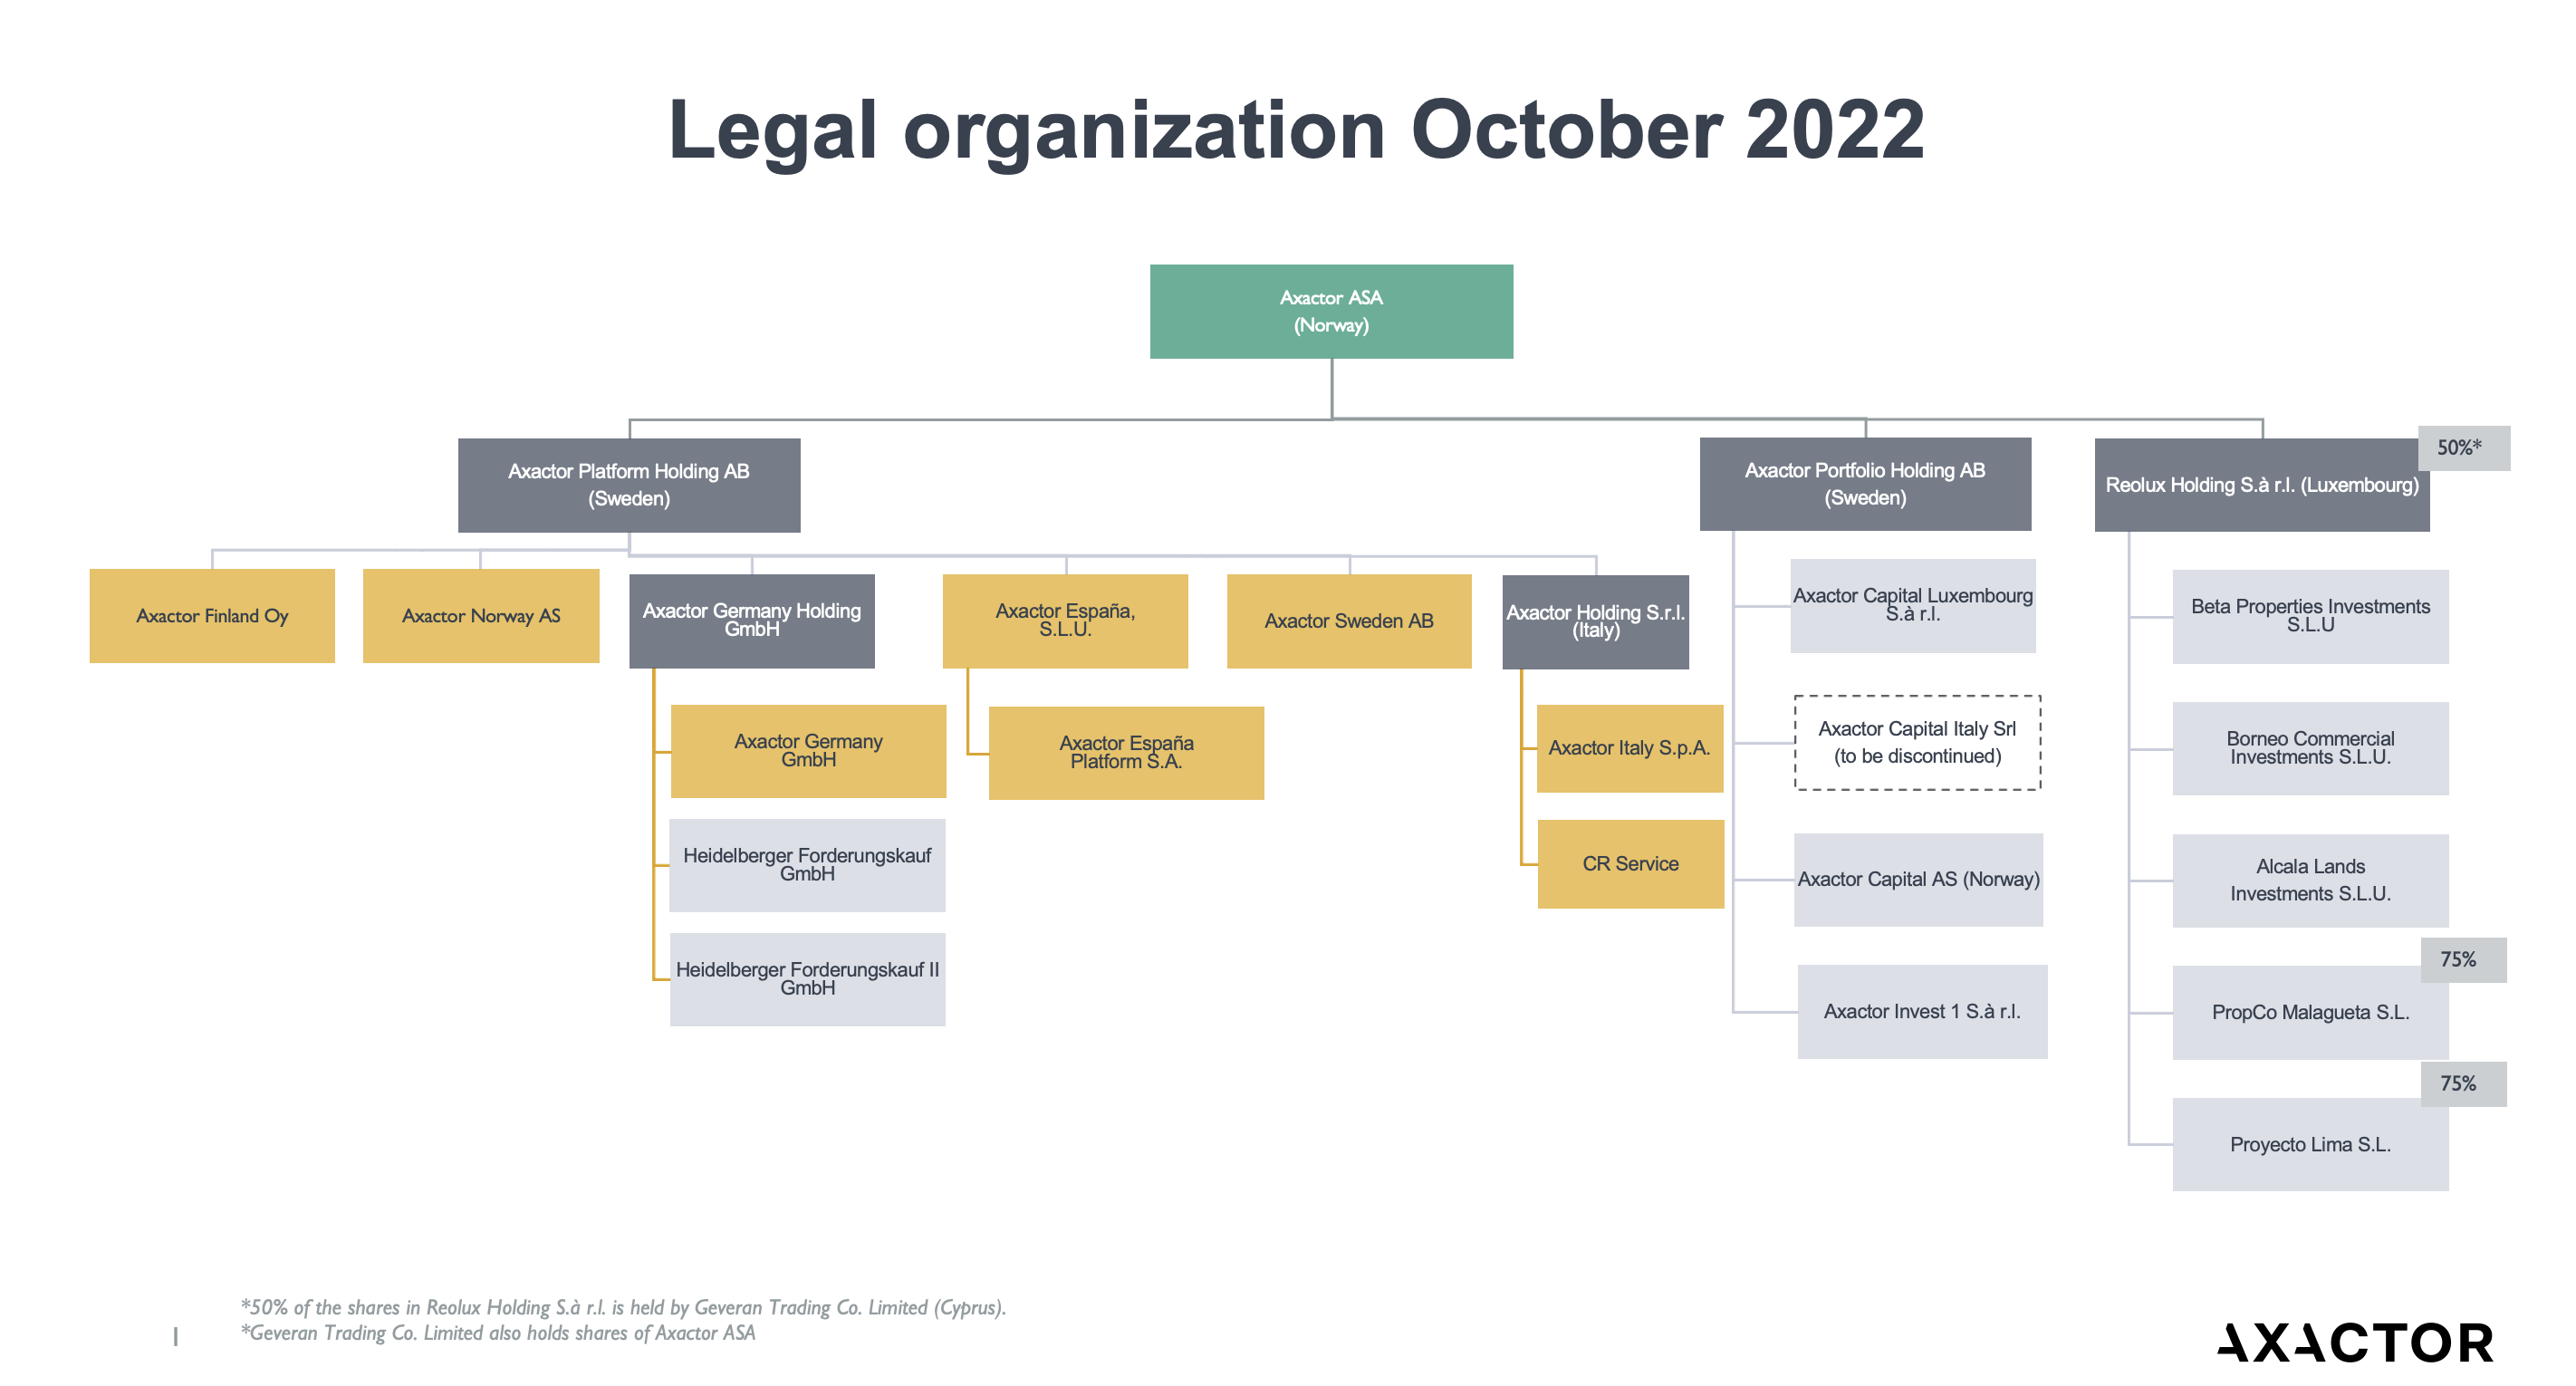 Legal Org Oct 2022 Axactor ASA